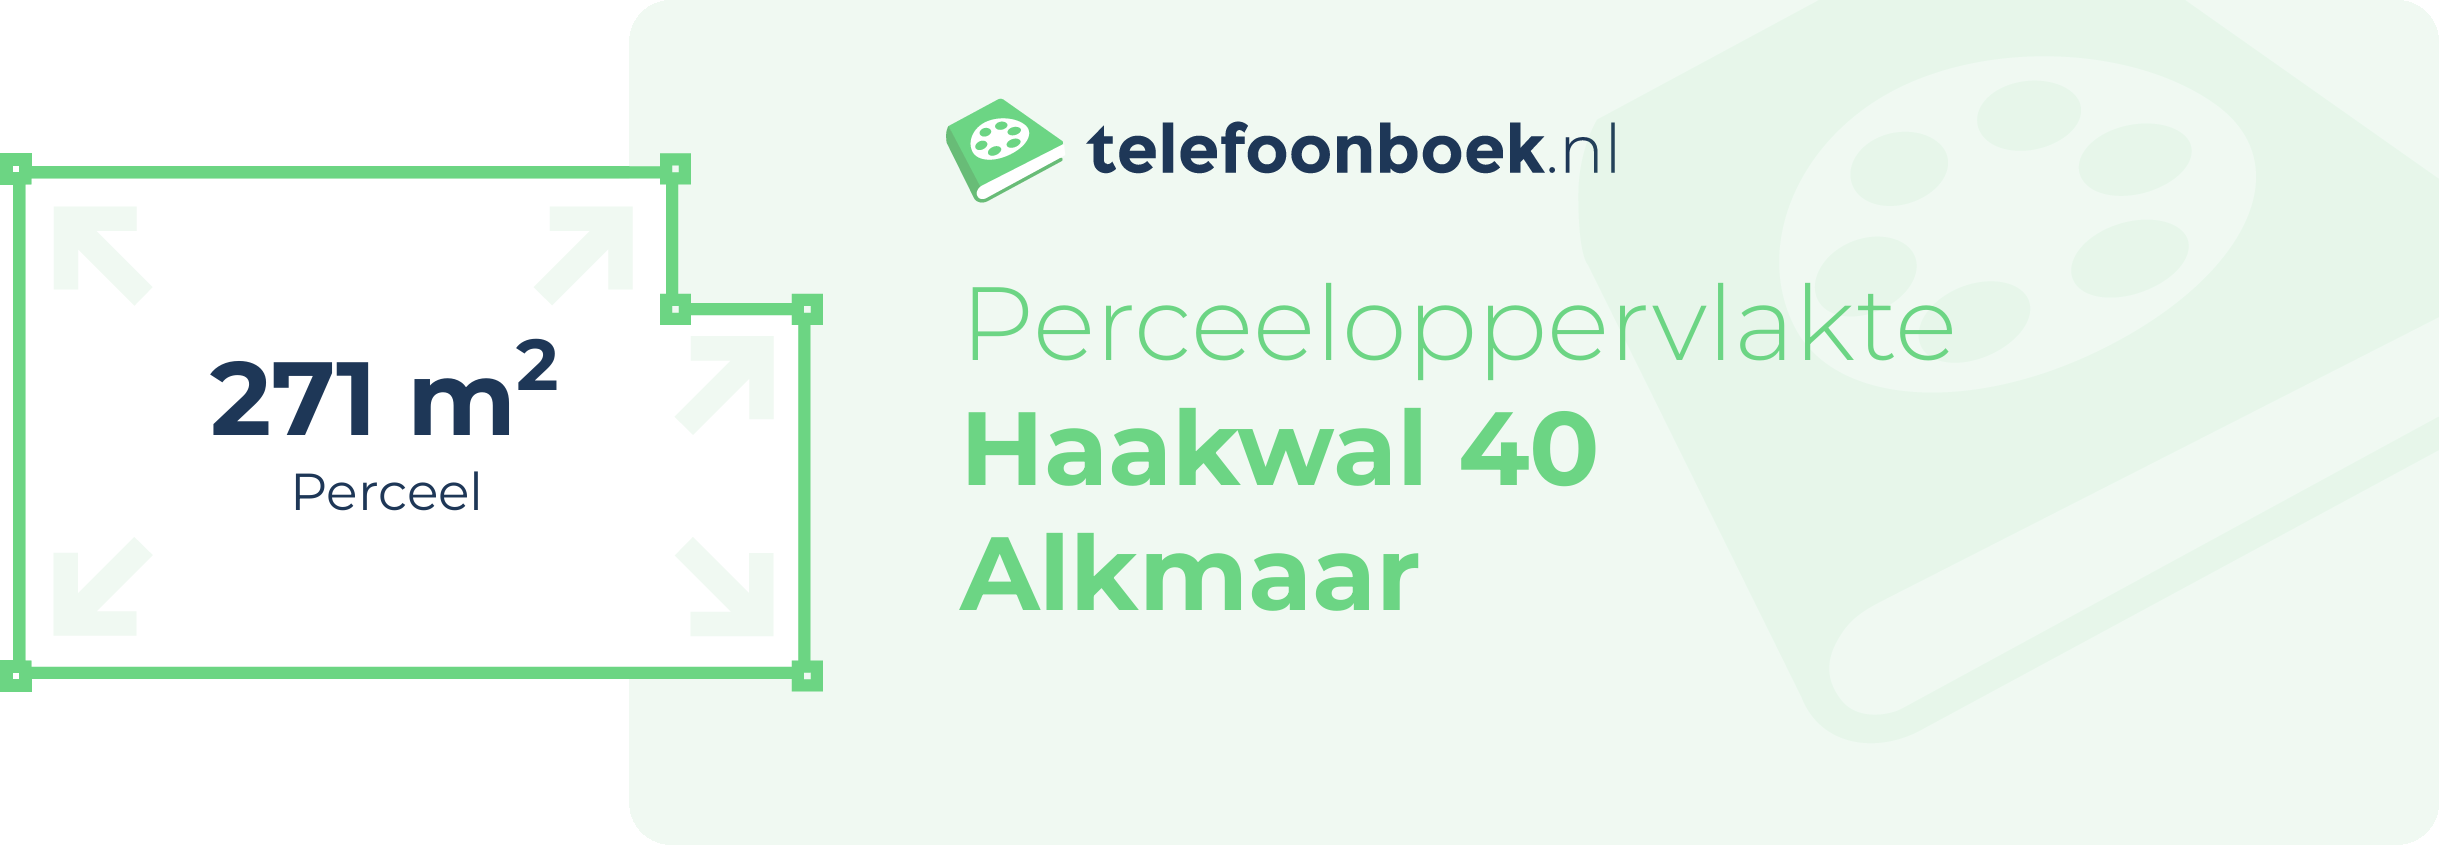 Perceeloppervlakte Haakwal 40 Alkmaar